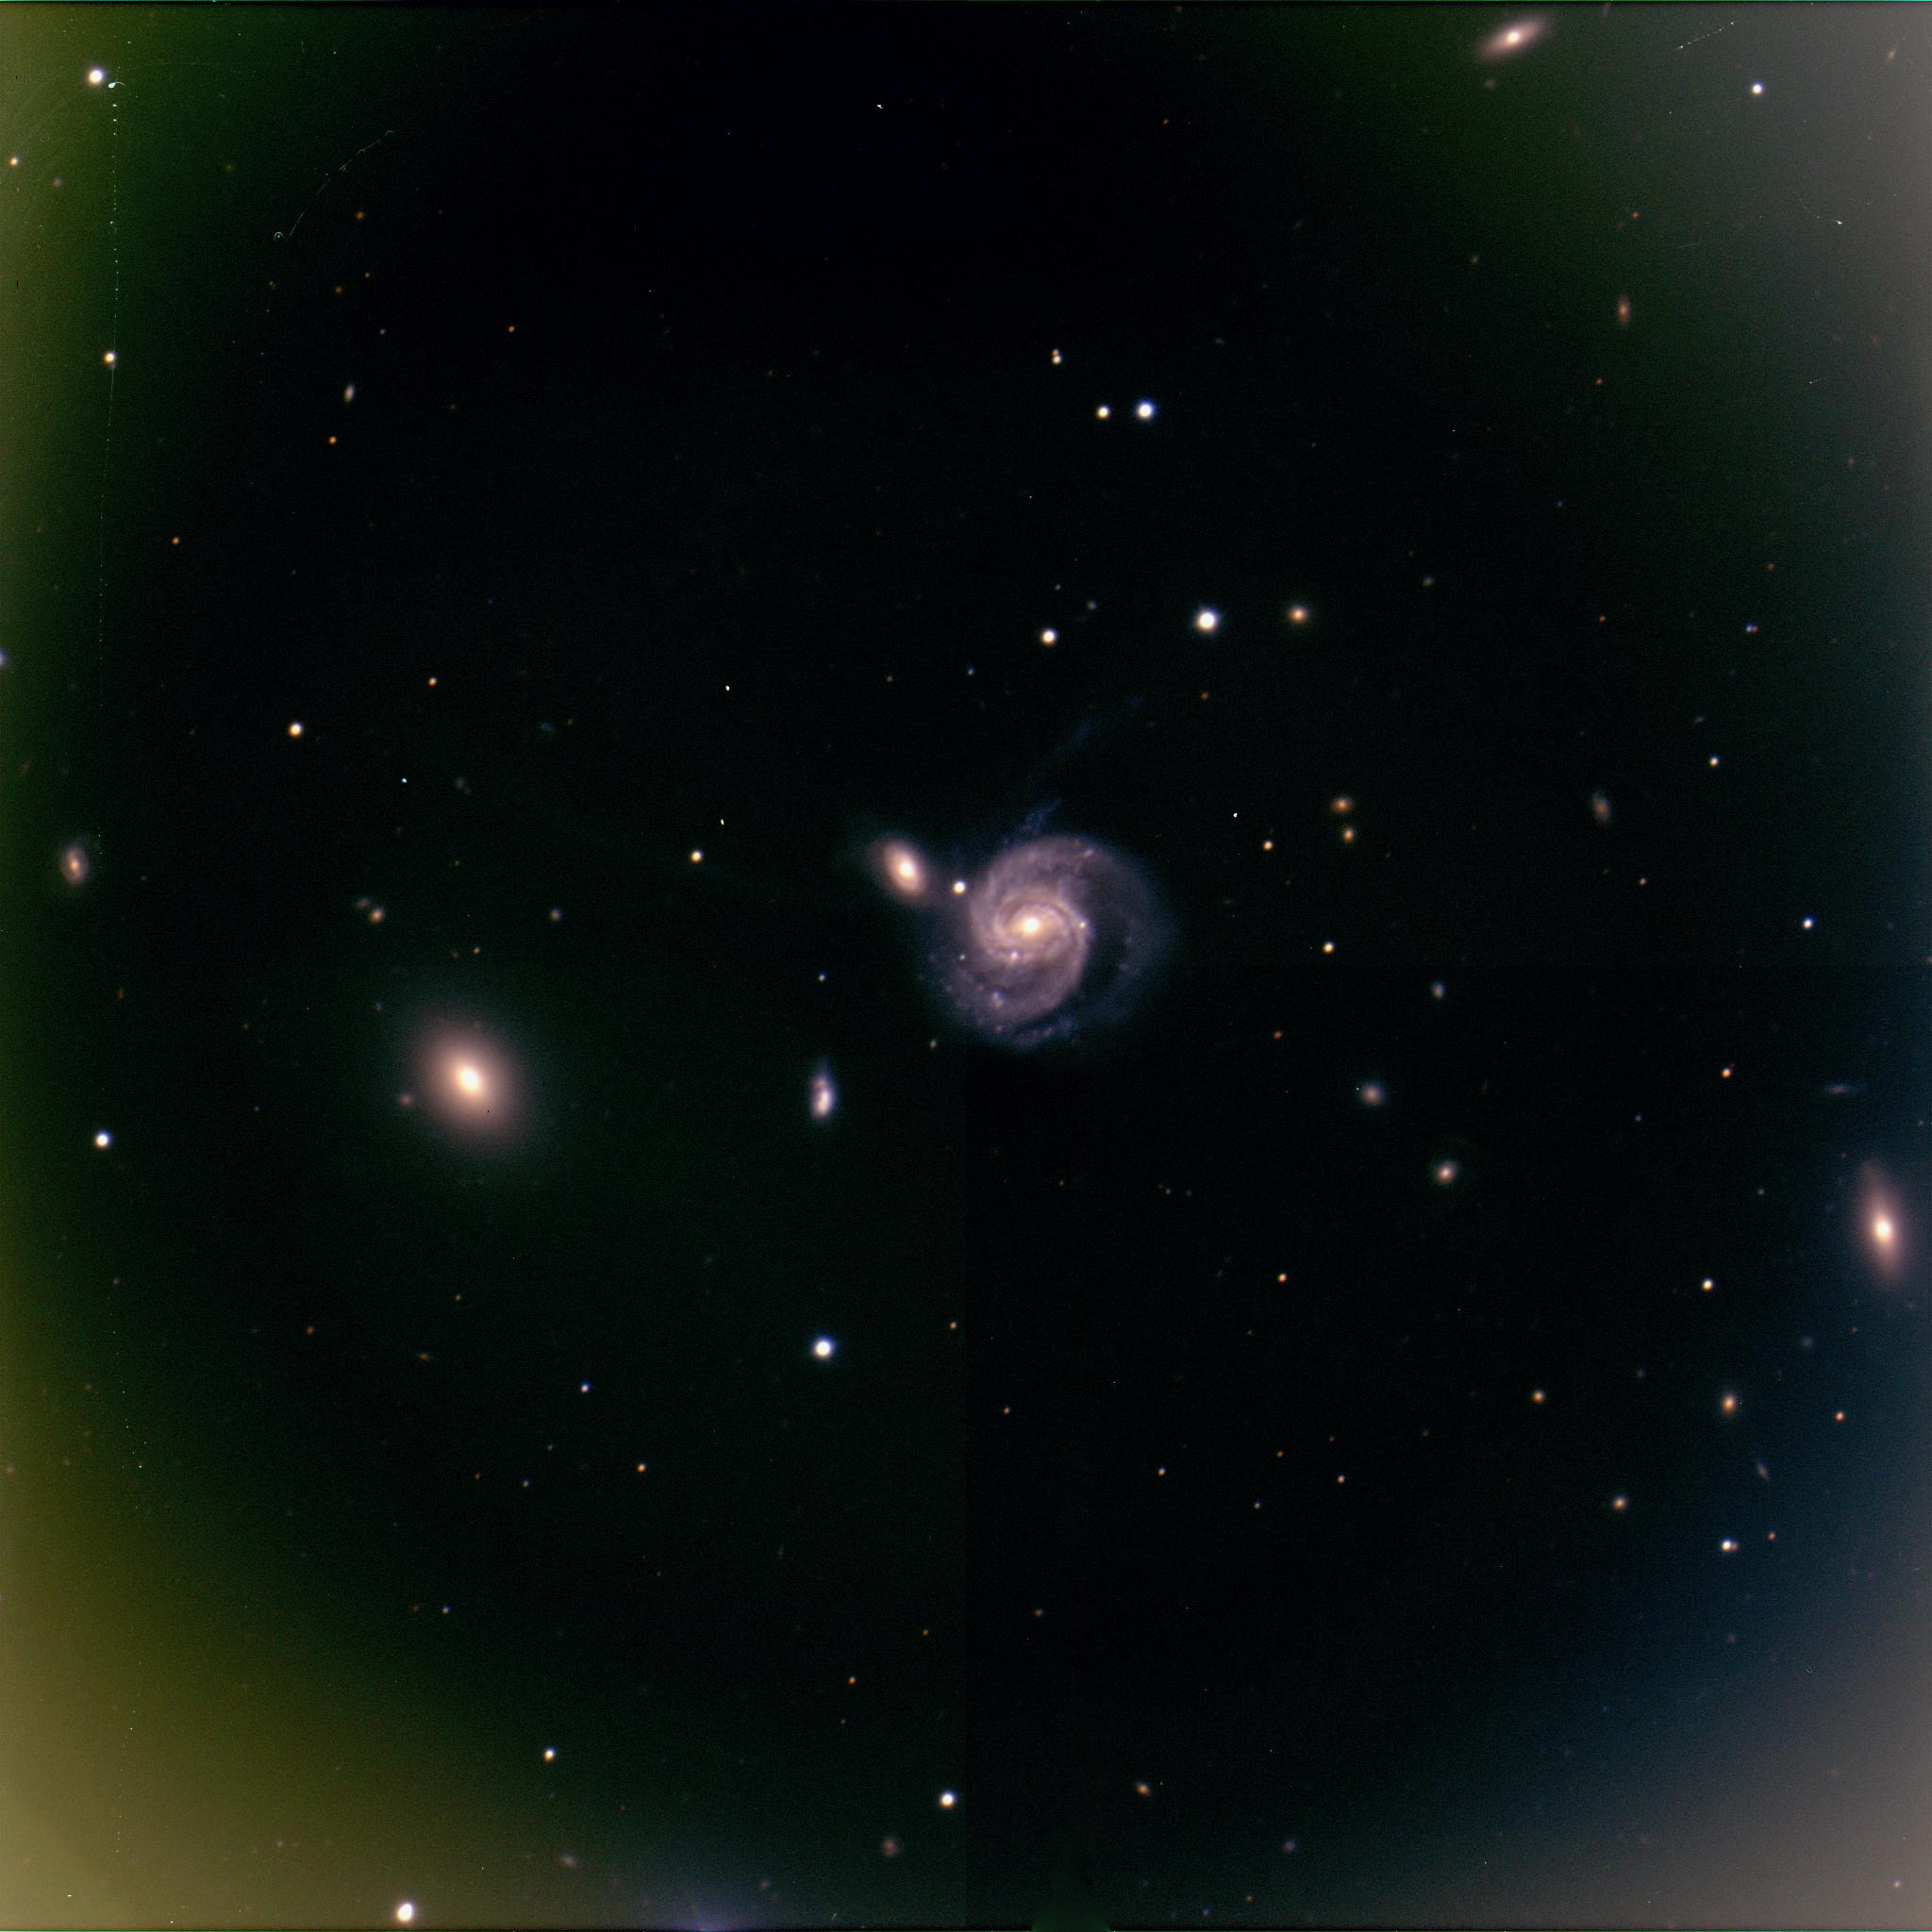 NGC 7674